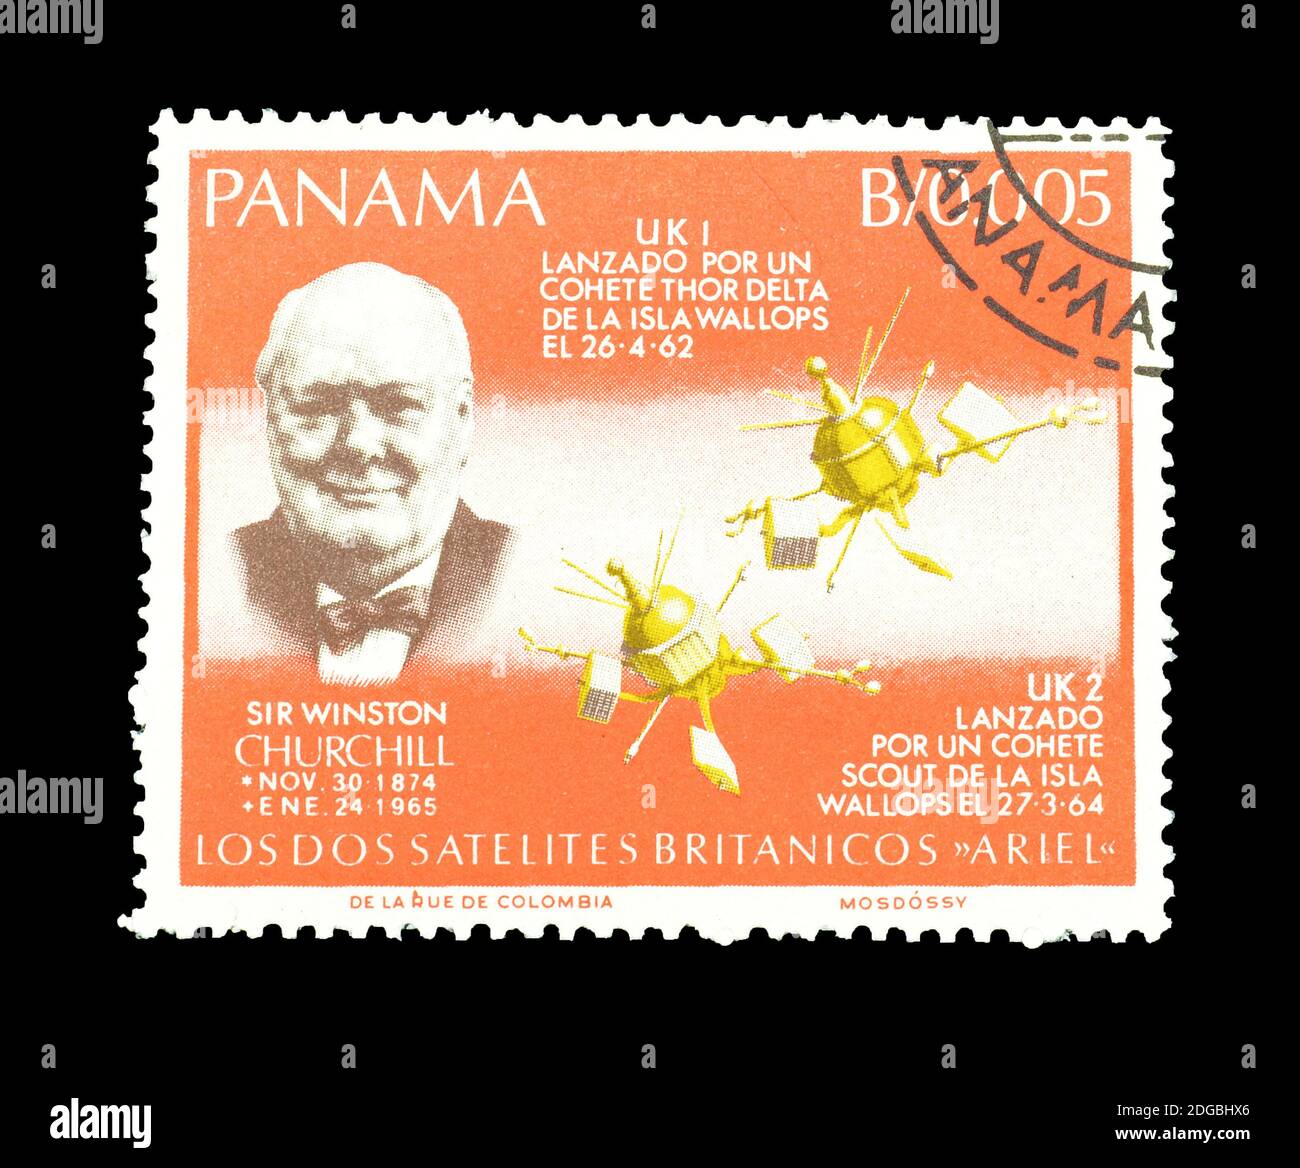 Abgesagte Briefmarke gedruckt von Panama, die Winston Churchill und British Satellites zeigt, um 1966. Stockfoto